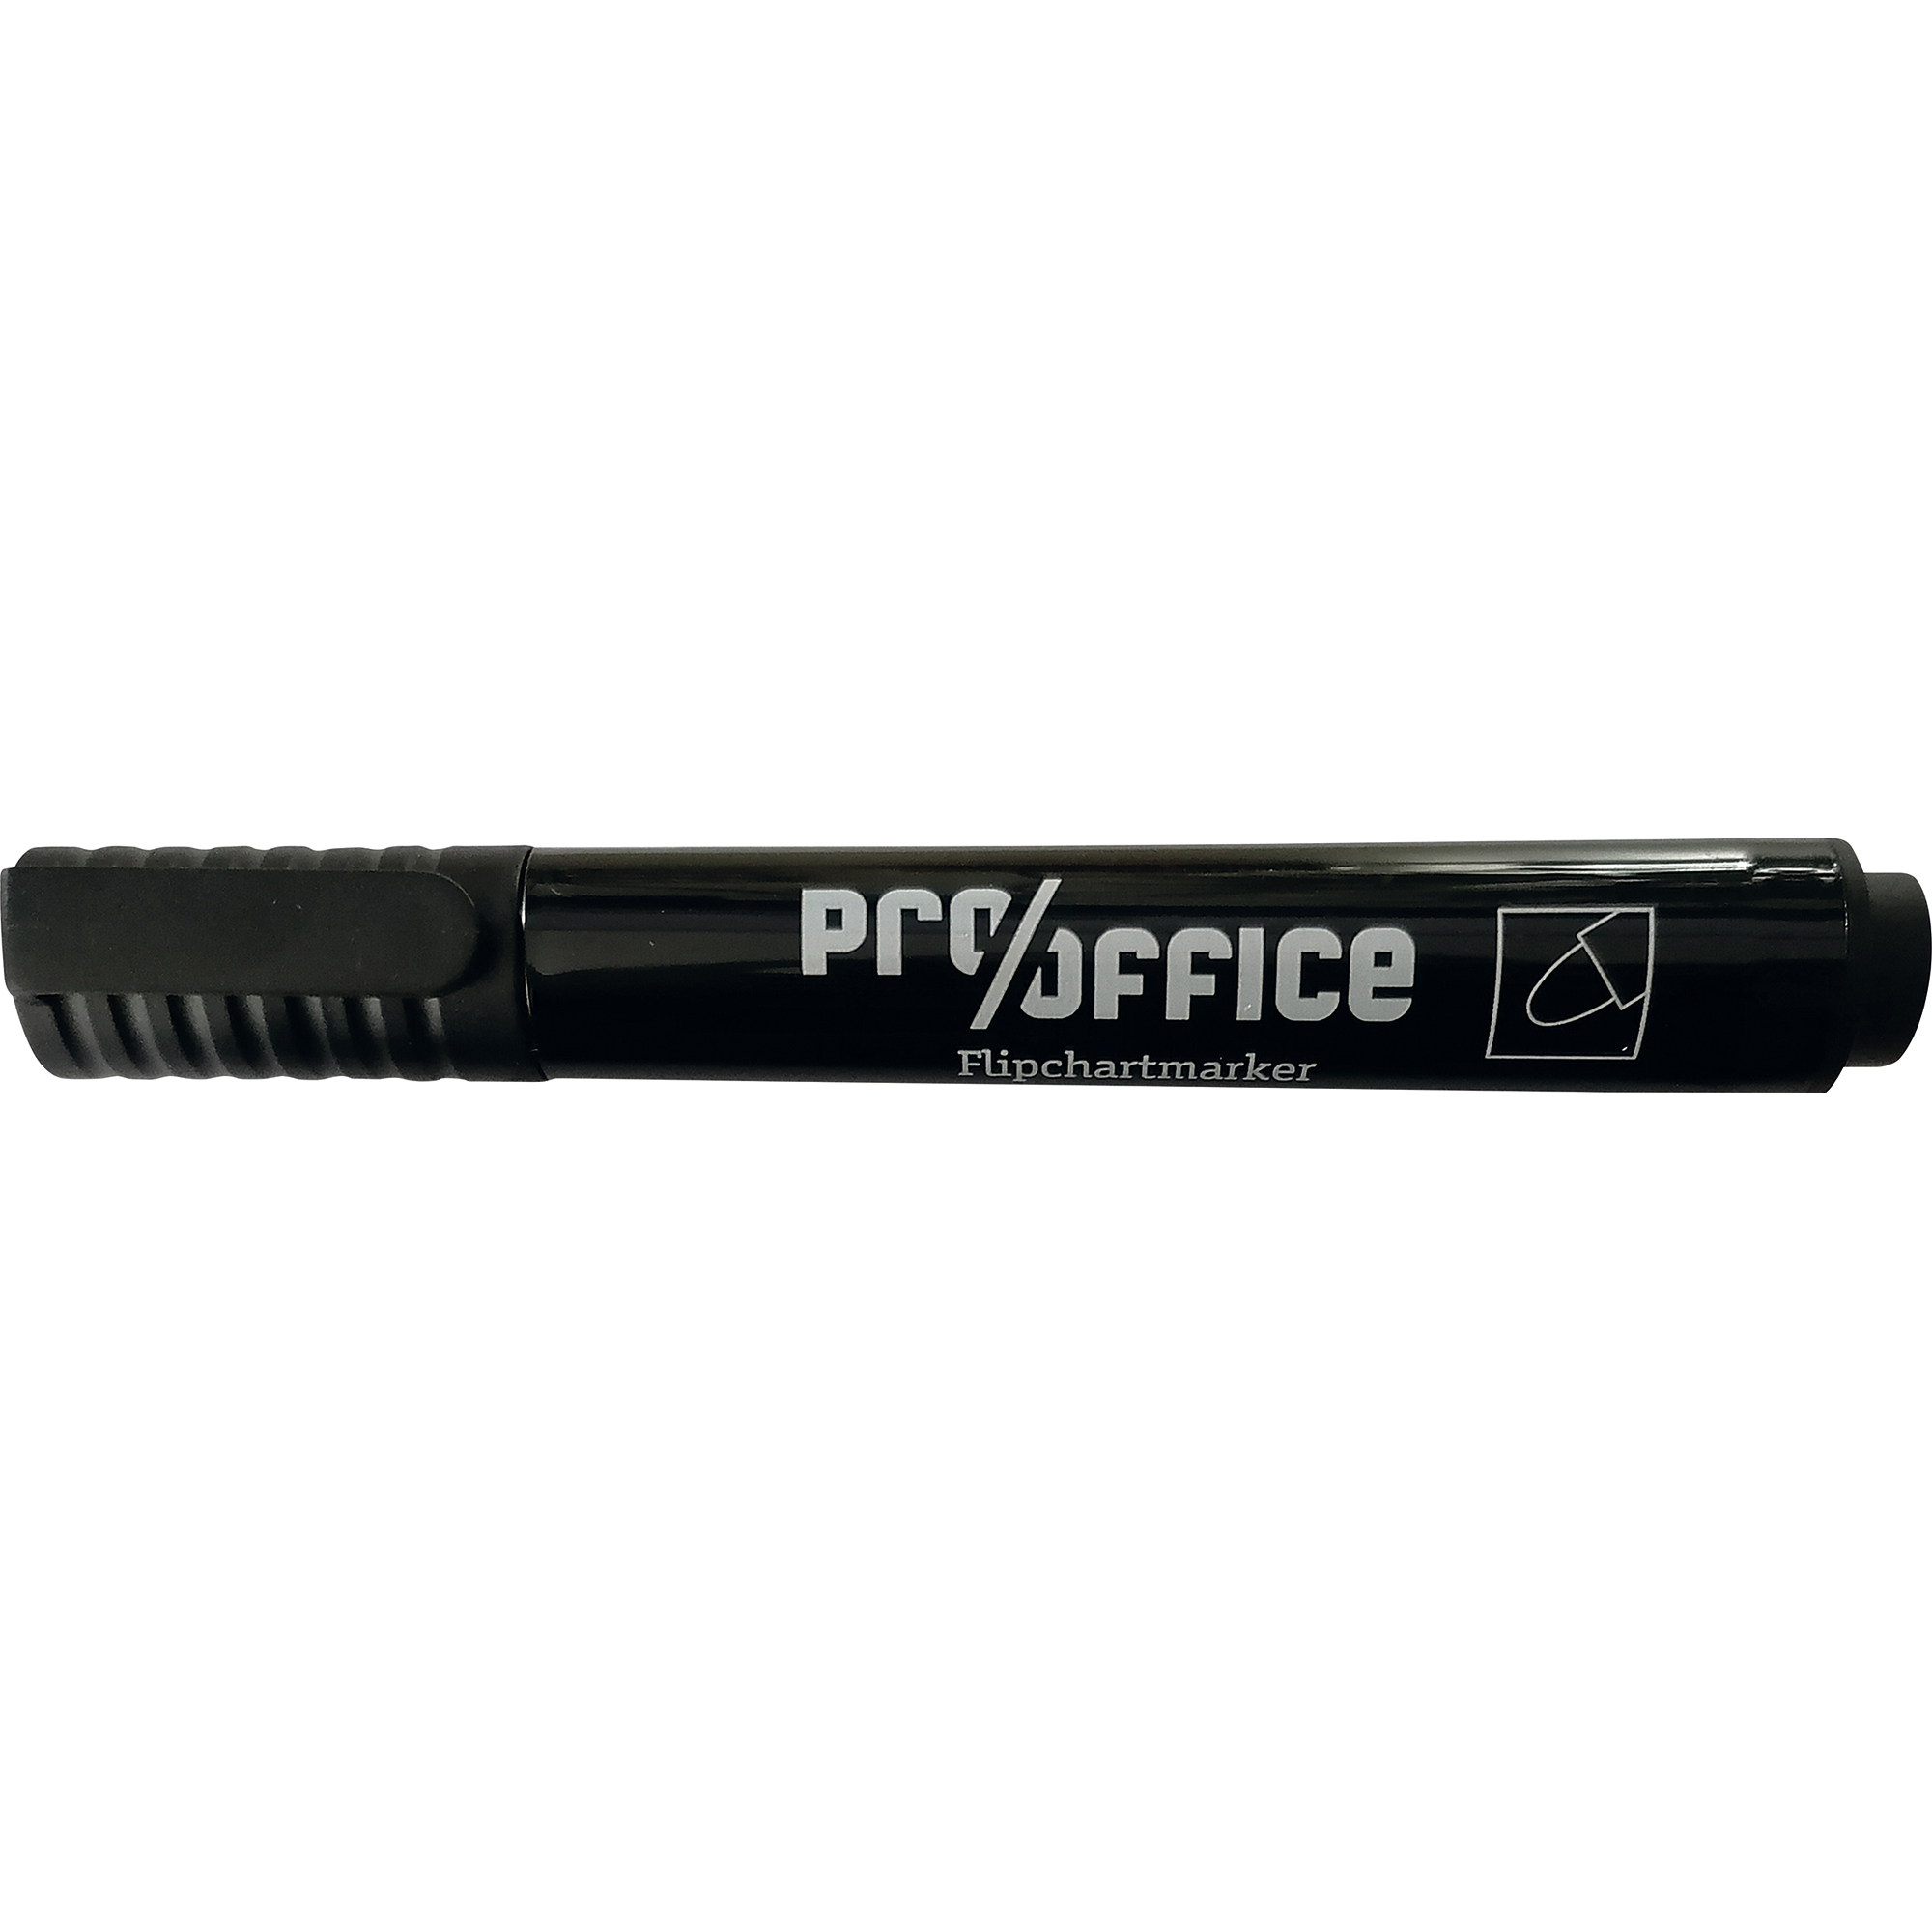 Pro/office Flipchartmarker 1-3mm mit Rundspitze schwarz